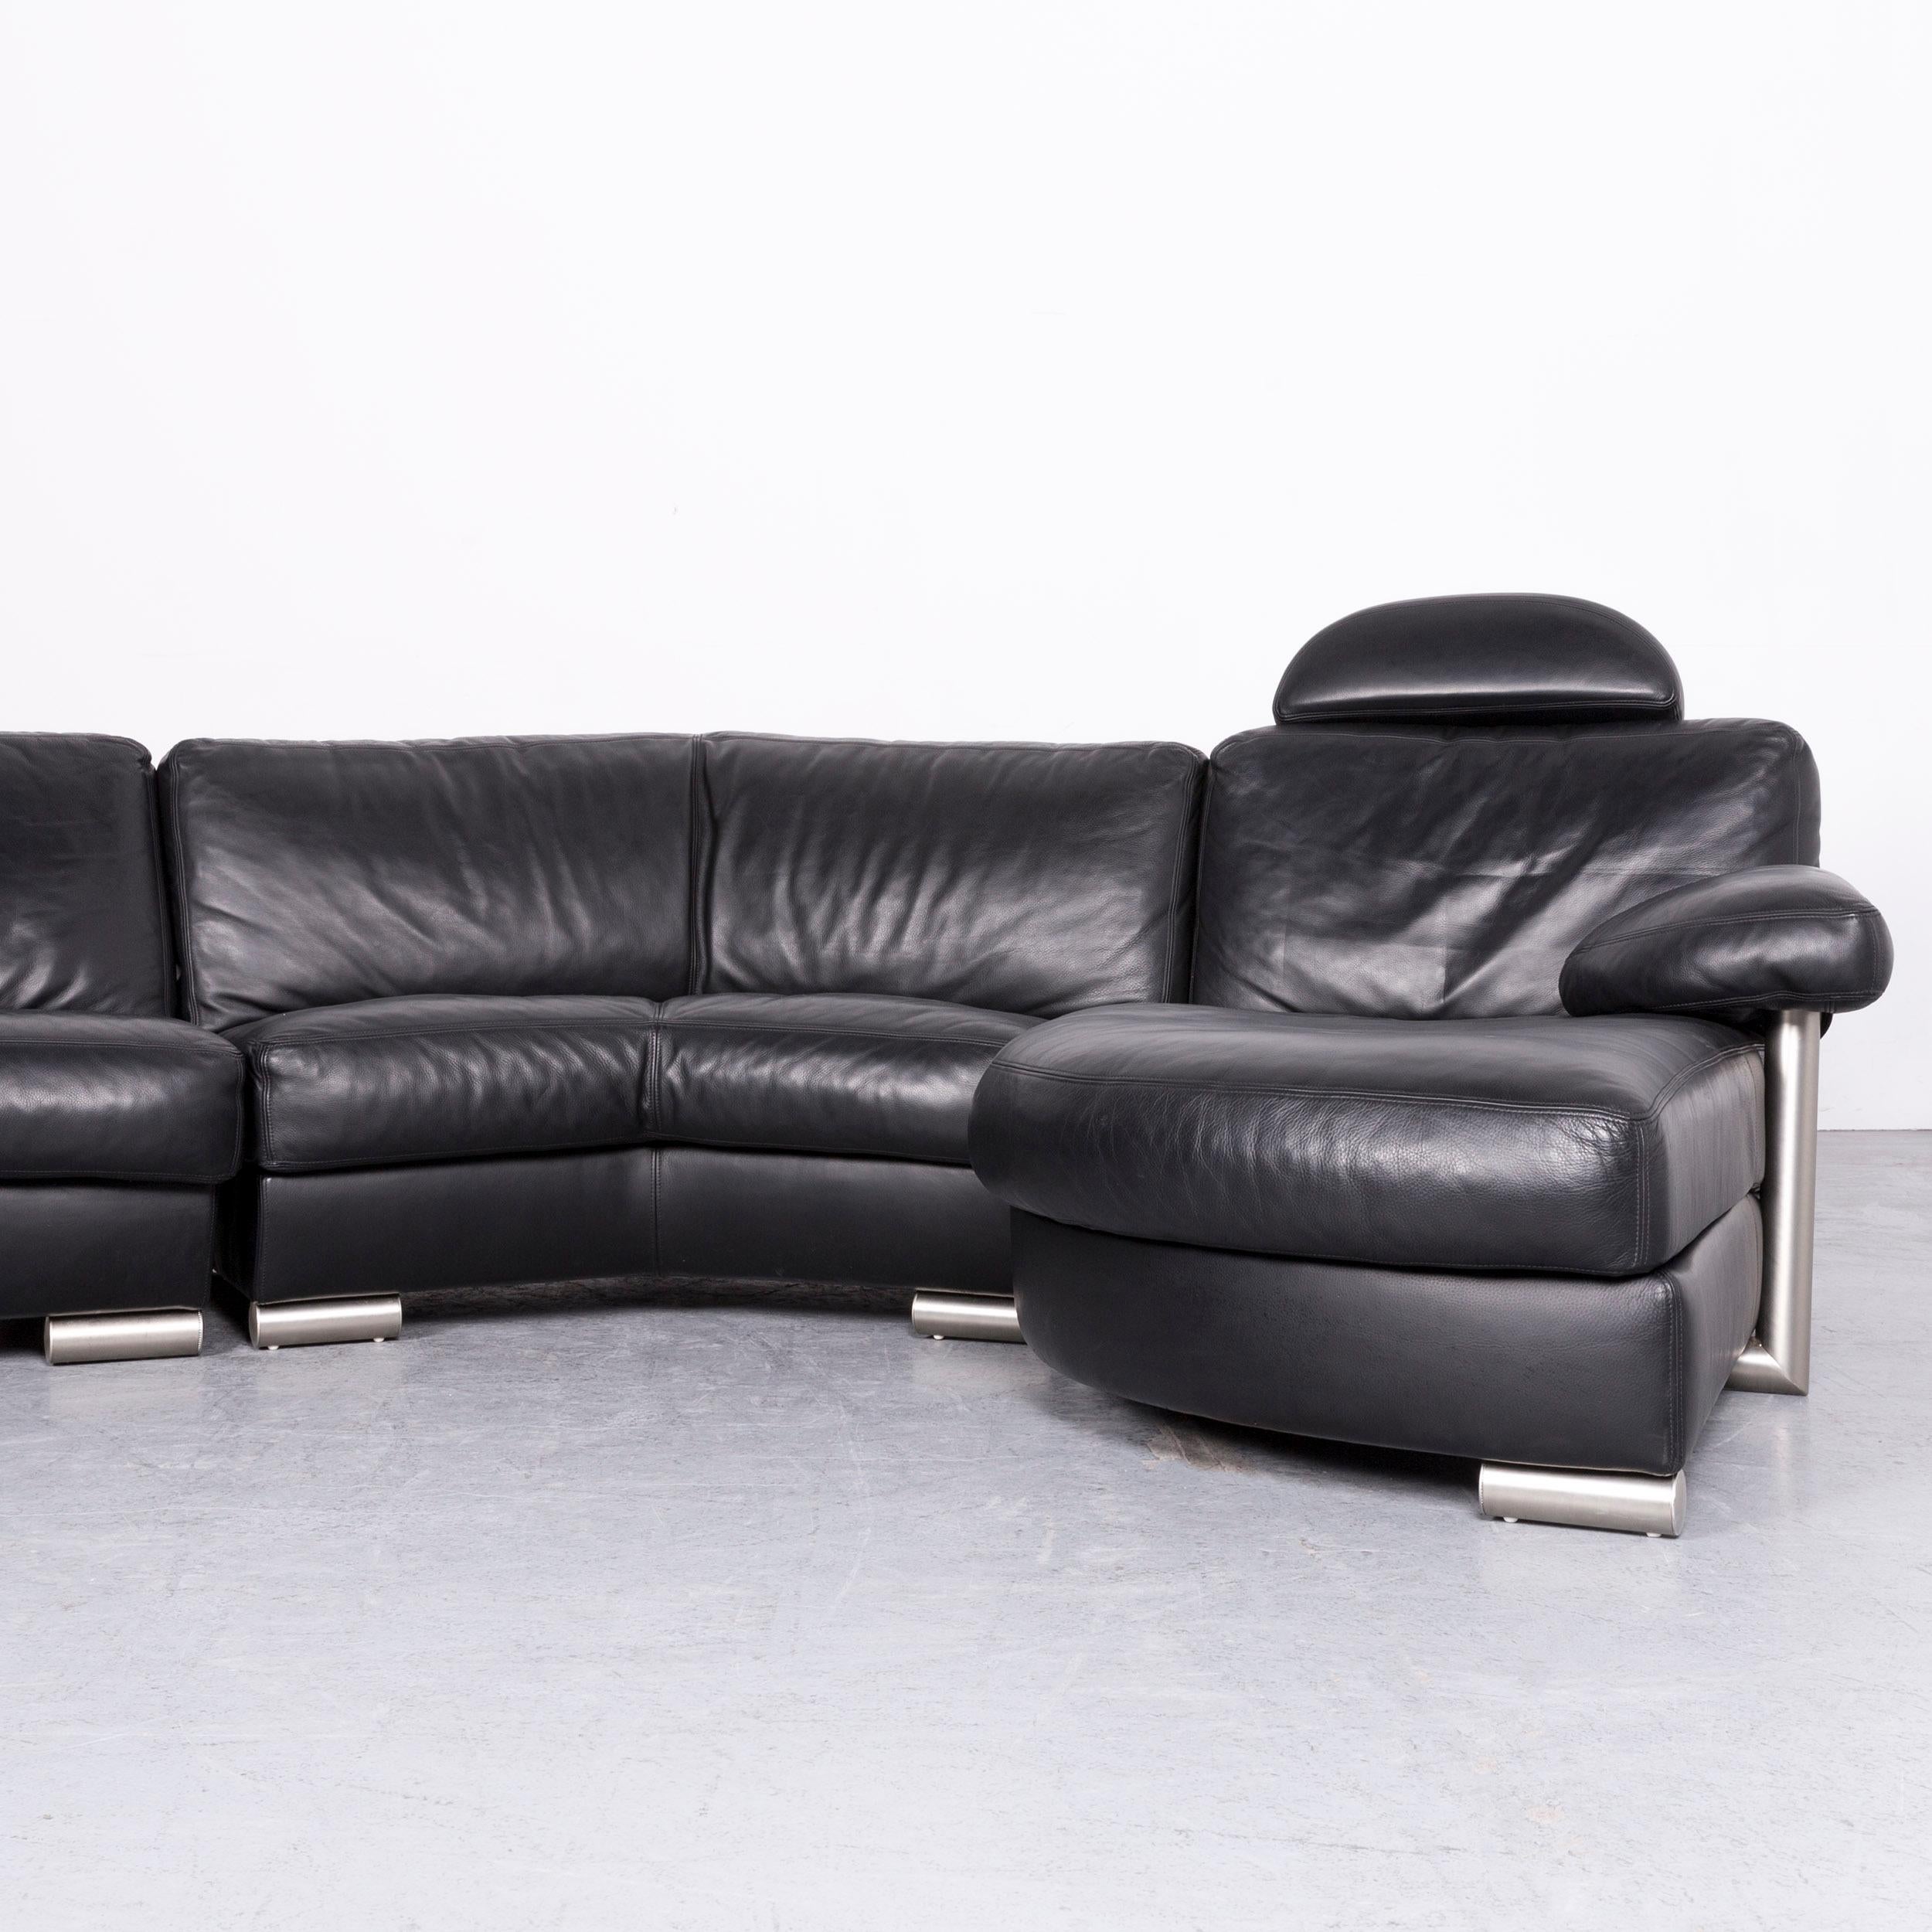 Artanova Medea Designer Black Leather Corner Sofa Couch In Good Condition For Sale In Cologne, DE